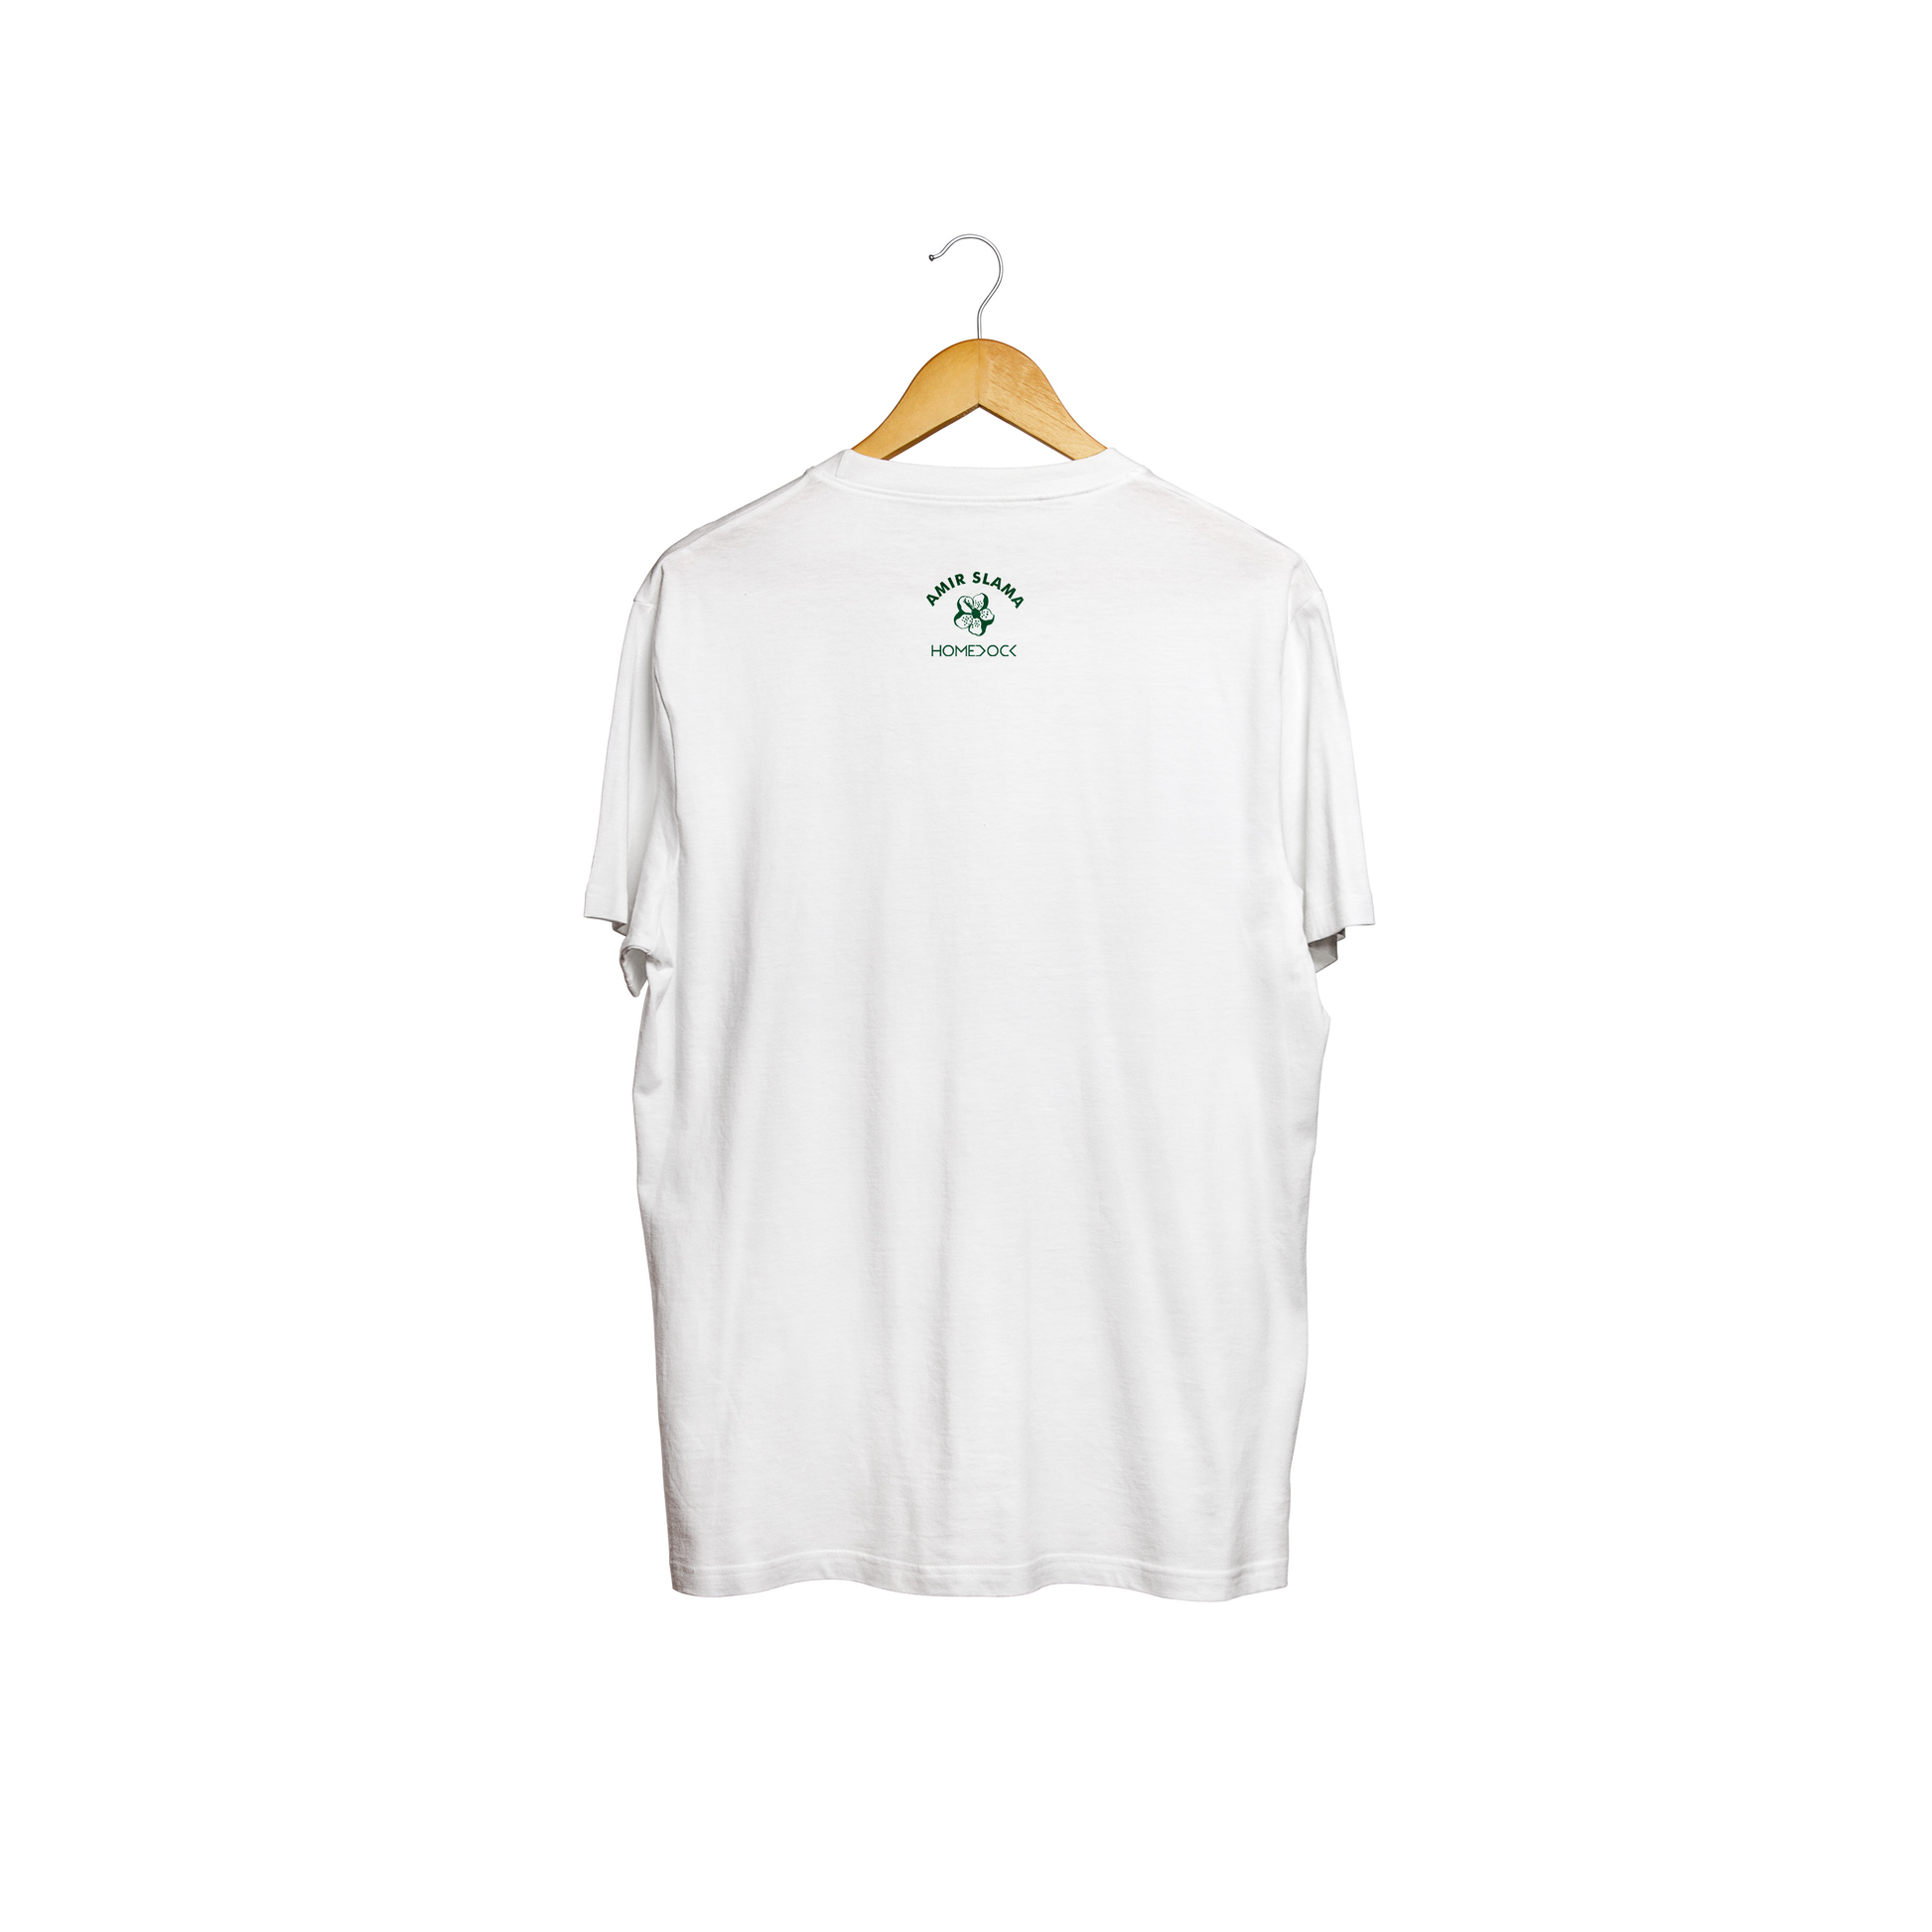 Homedock Camiseta Florear GG - Branco A Plumari